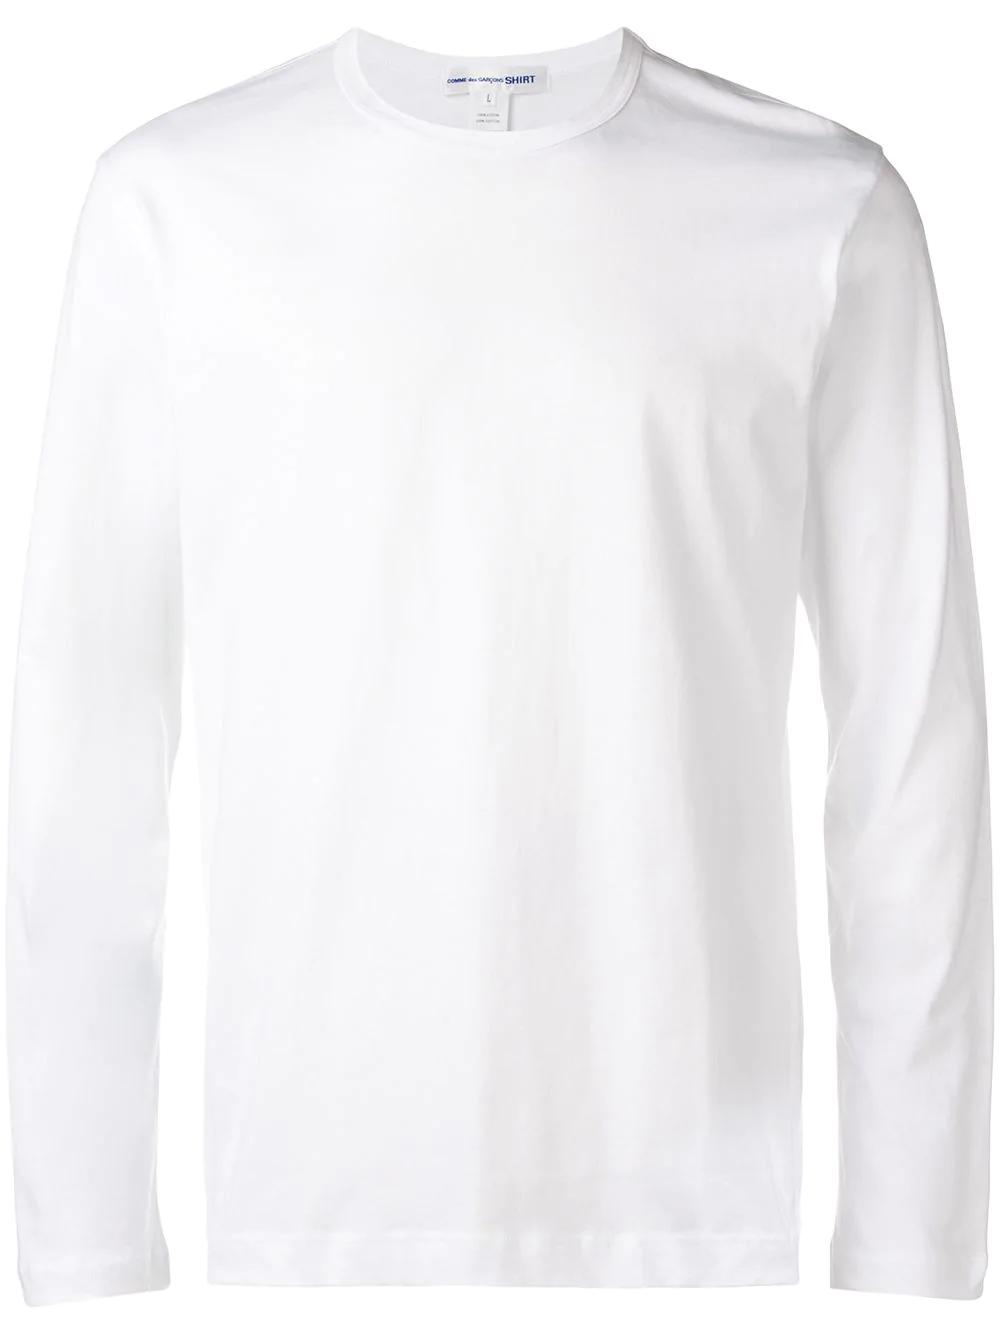 Comme Des Garçons 白色长袖t恤 In White | ModeSens